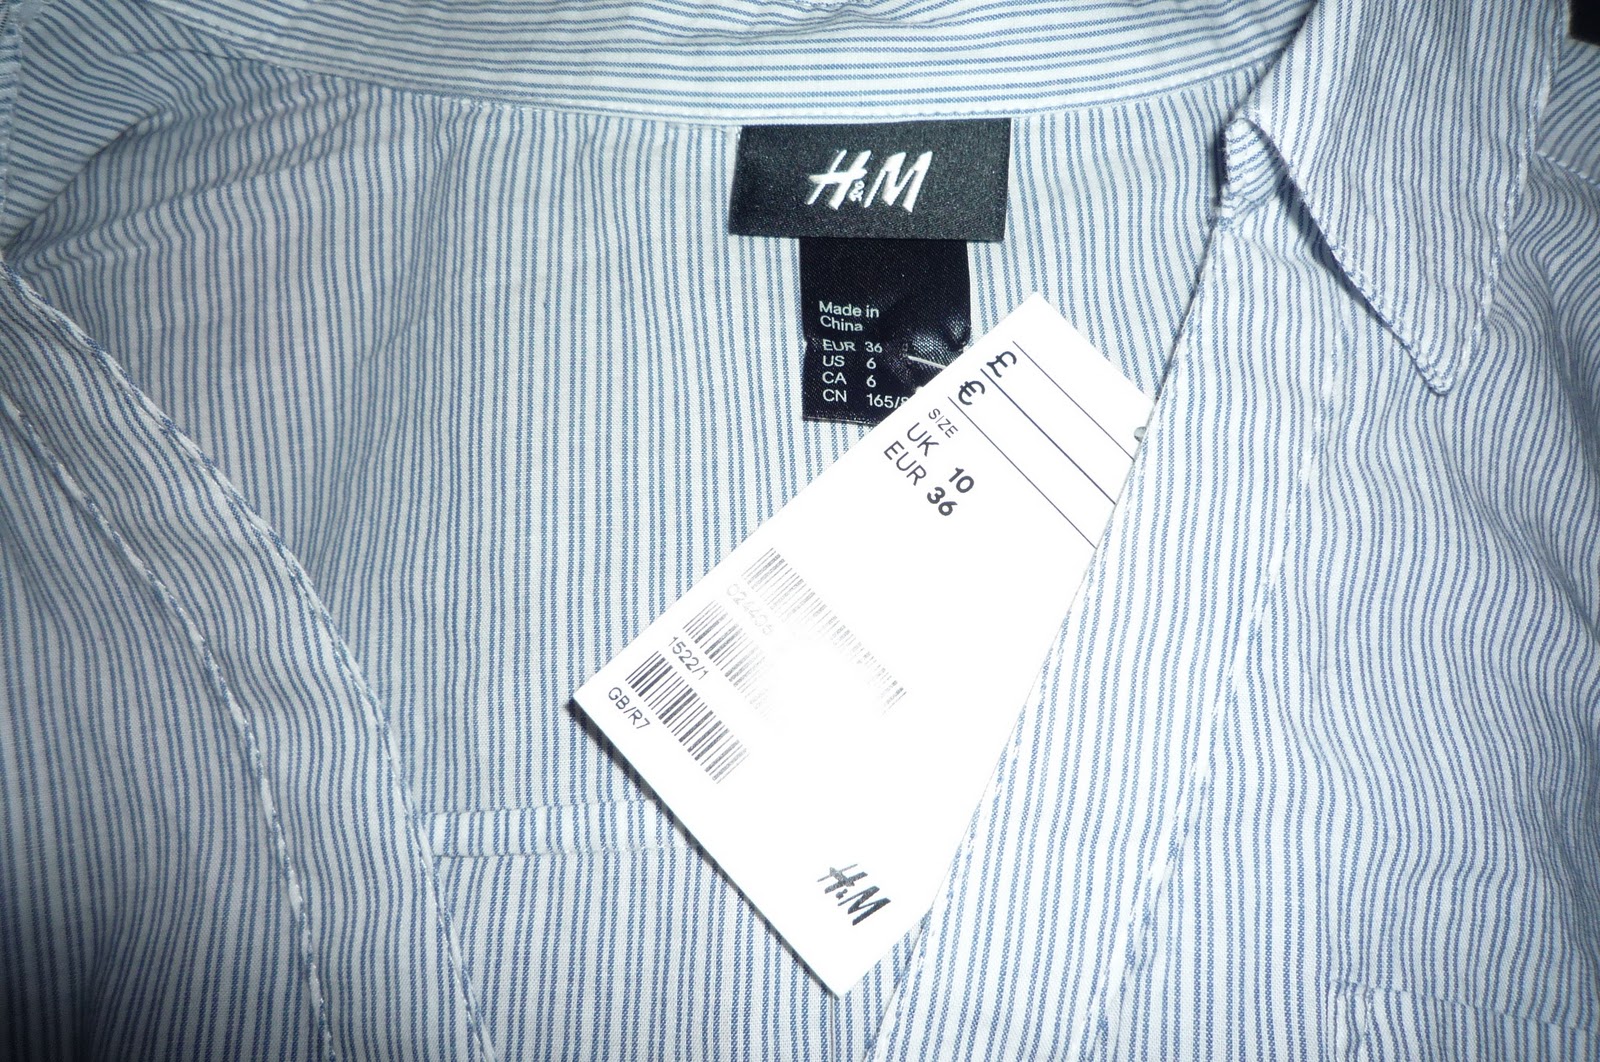 h and m dress shirts